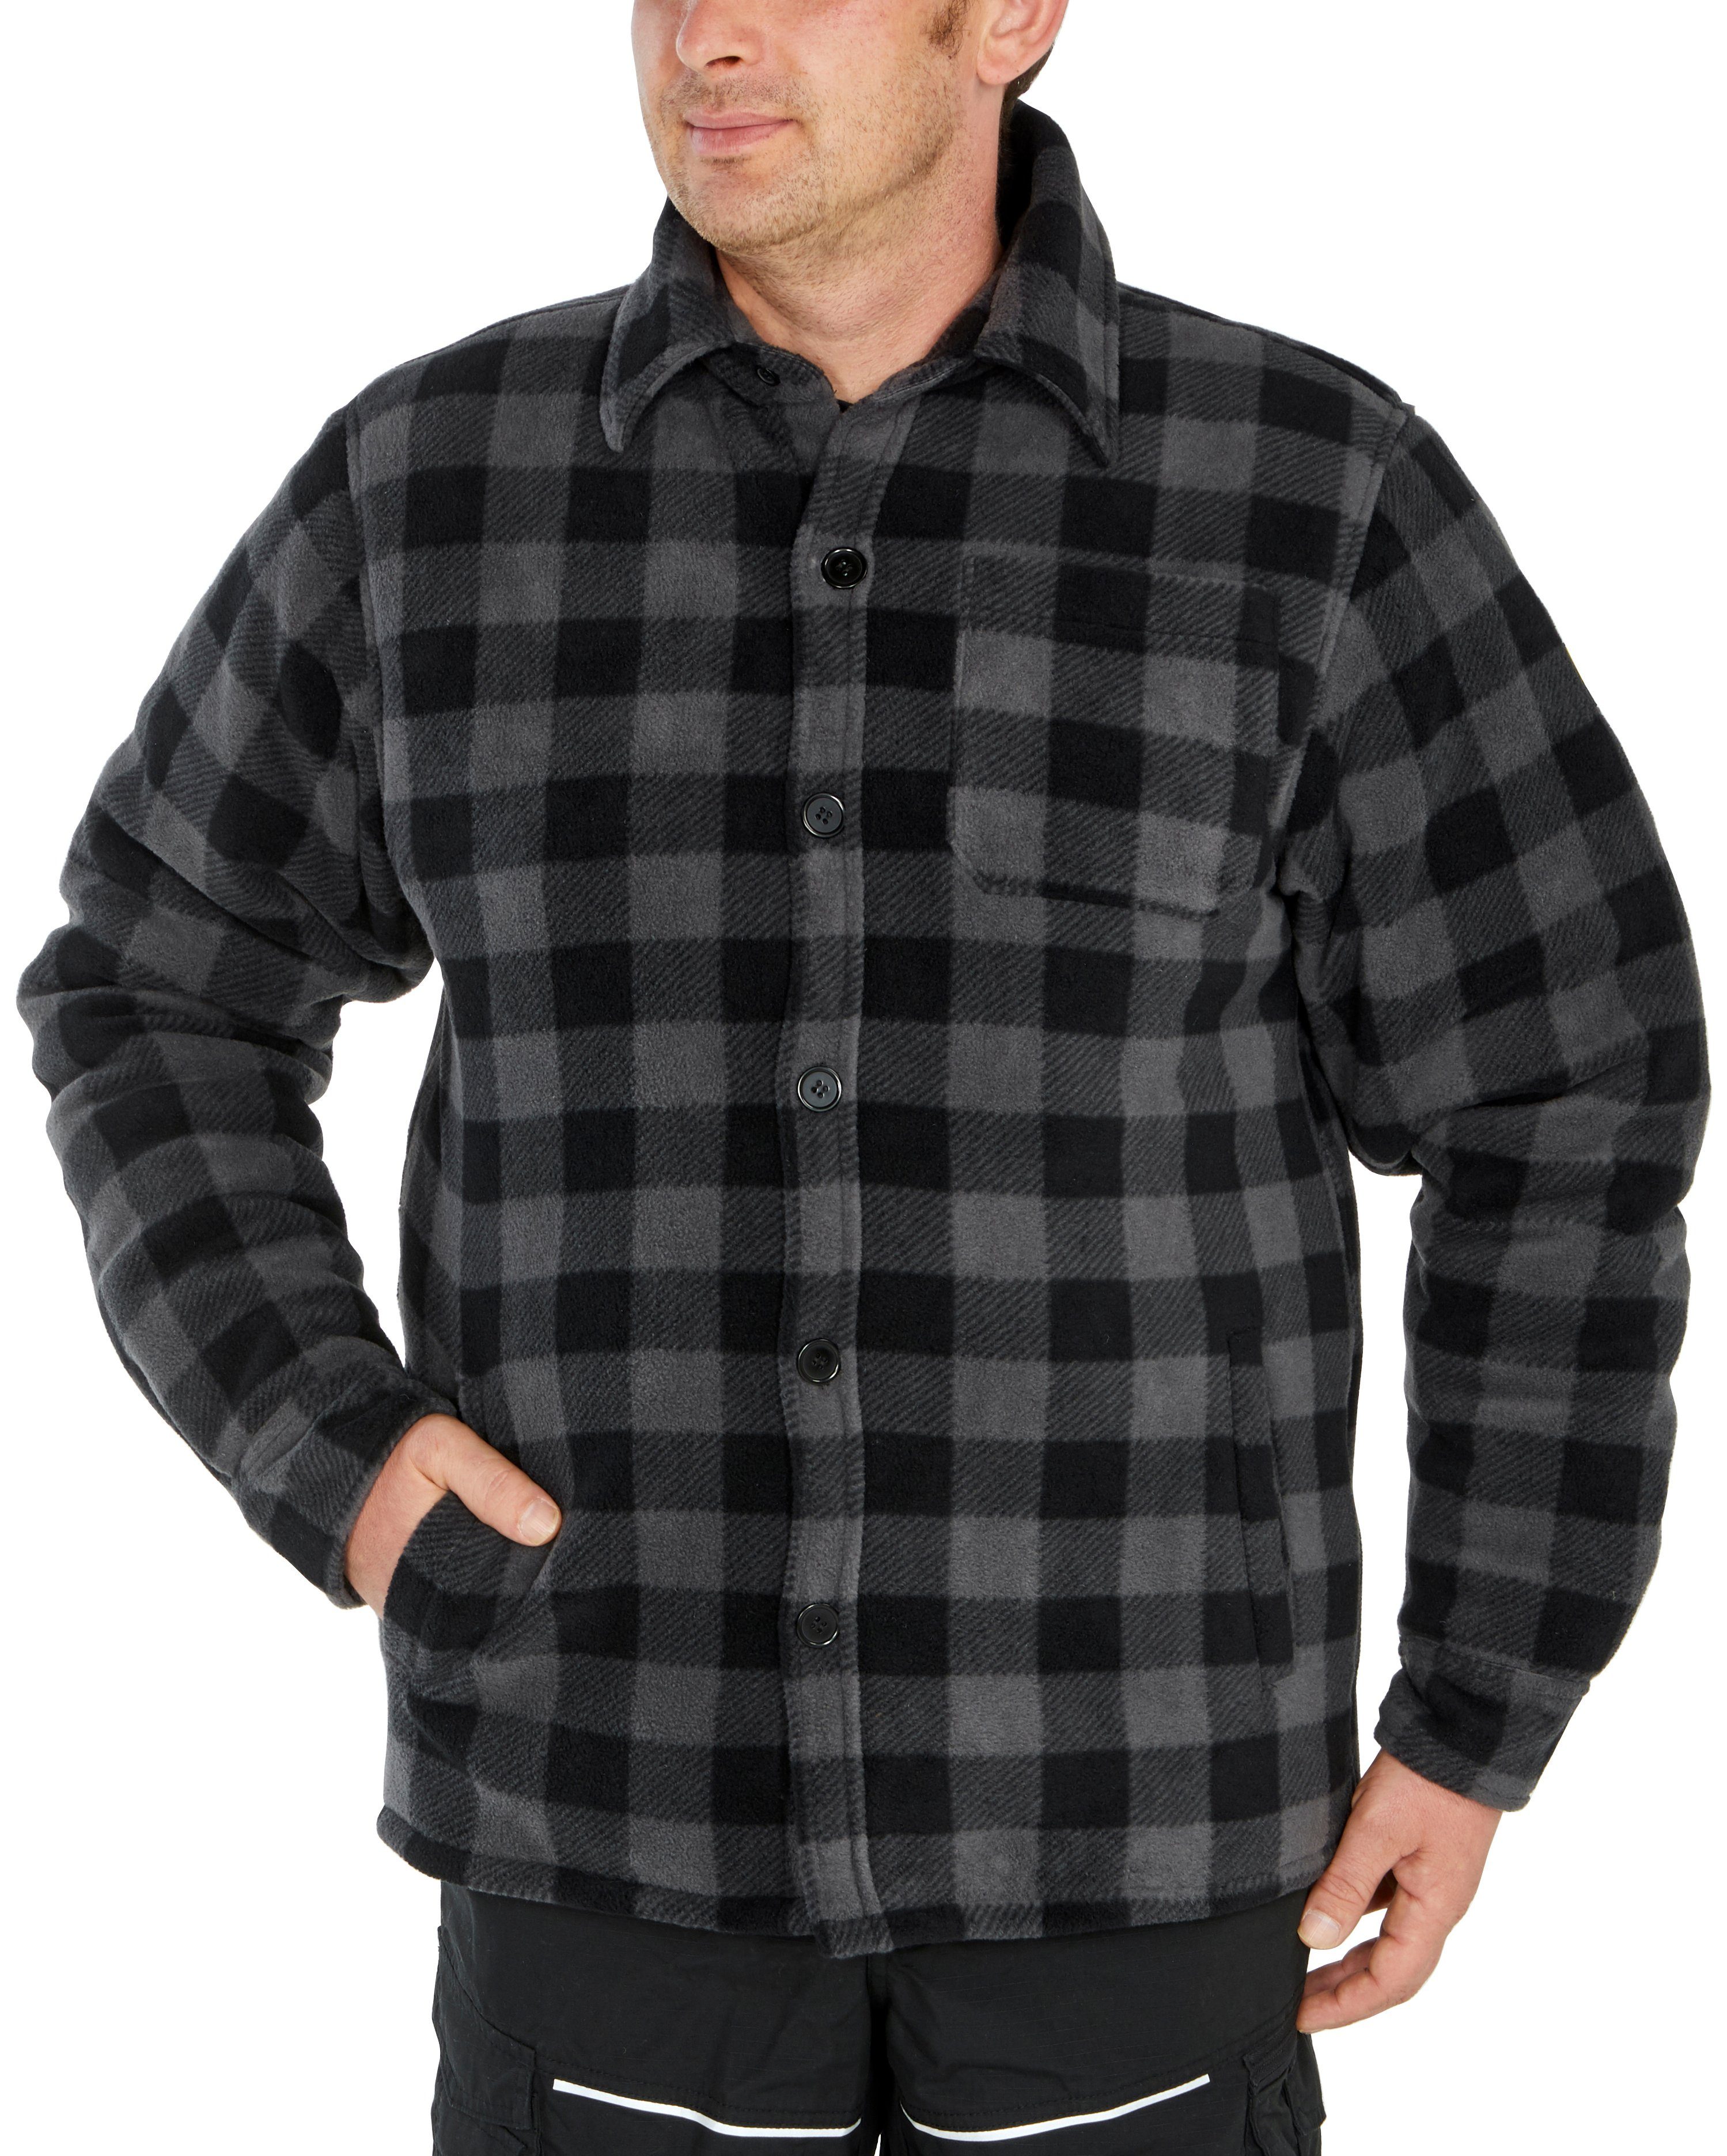 grau-schwarz verlängertem zu oder (als Taschen, Northern Jacke zugeknöpft Country warm 5 Flanellhemd gefüttert, mit offen tragen) Hemd mit Rücken, Flanellstoff